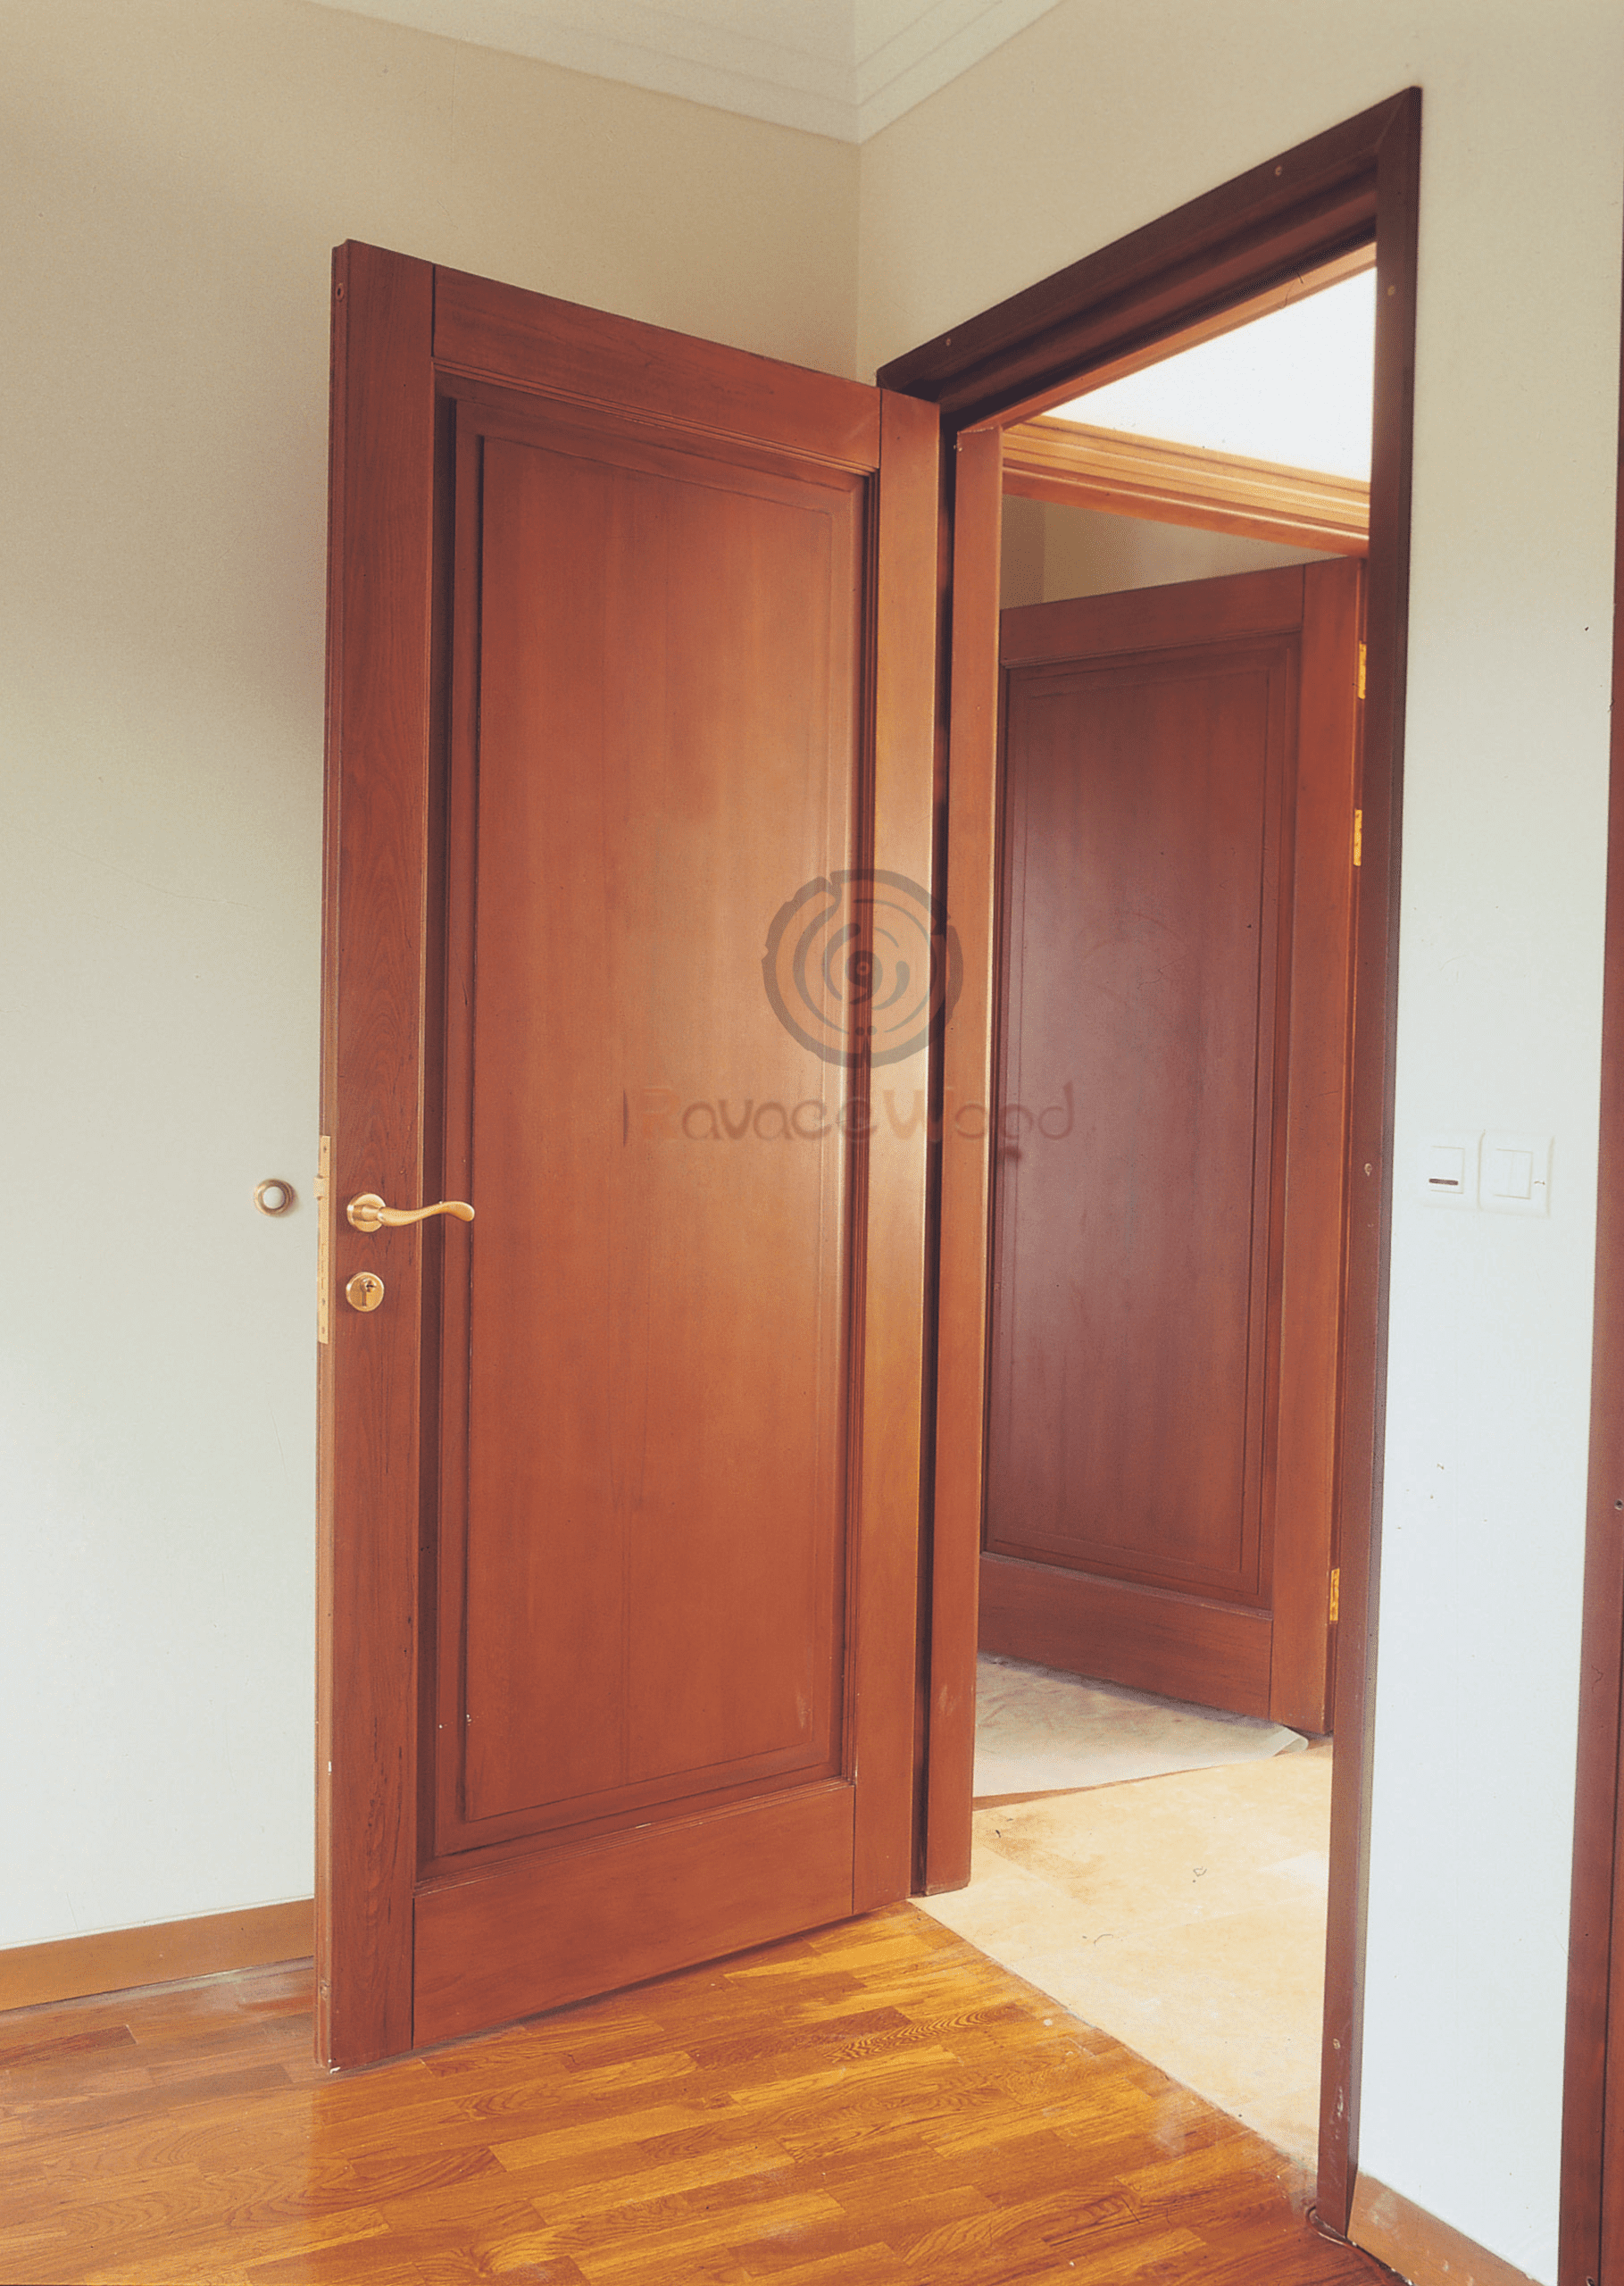 درب اتاقی و سرویسی مدل DR-704